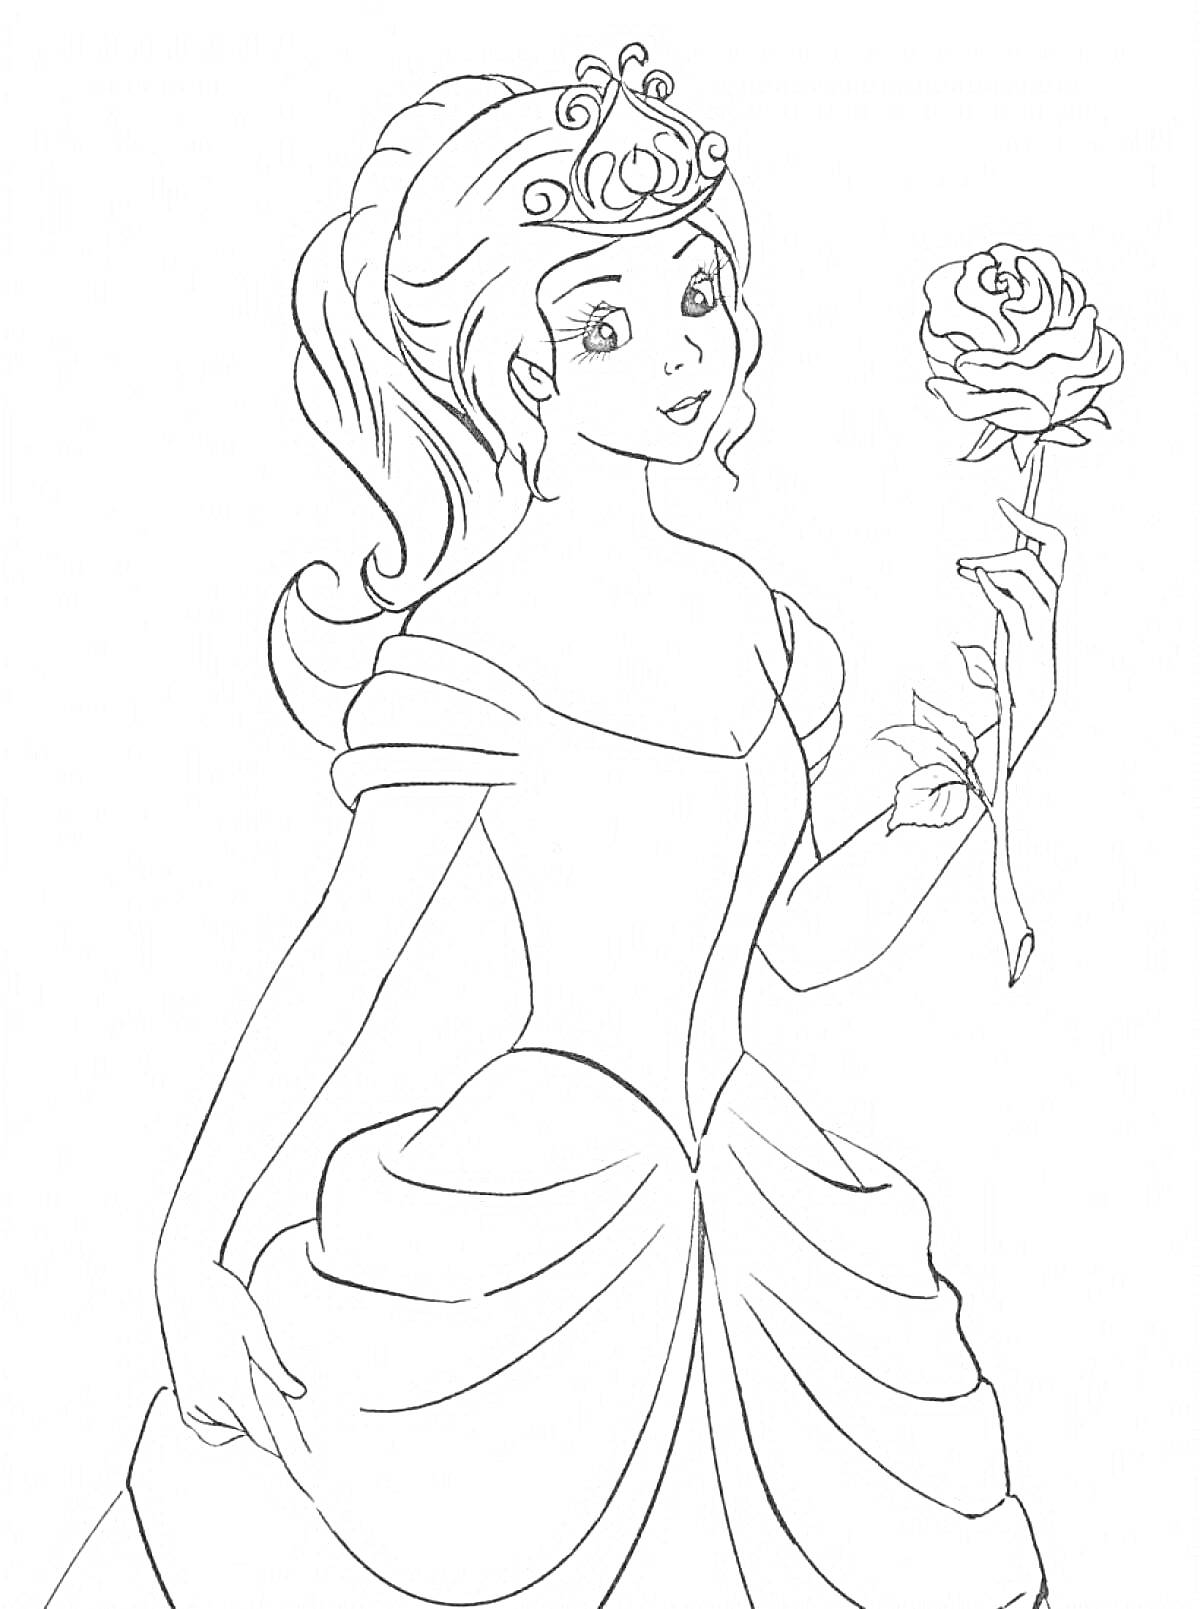 Раскраска Принцесса с розой в руке